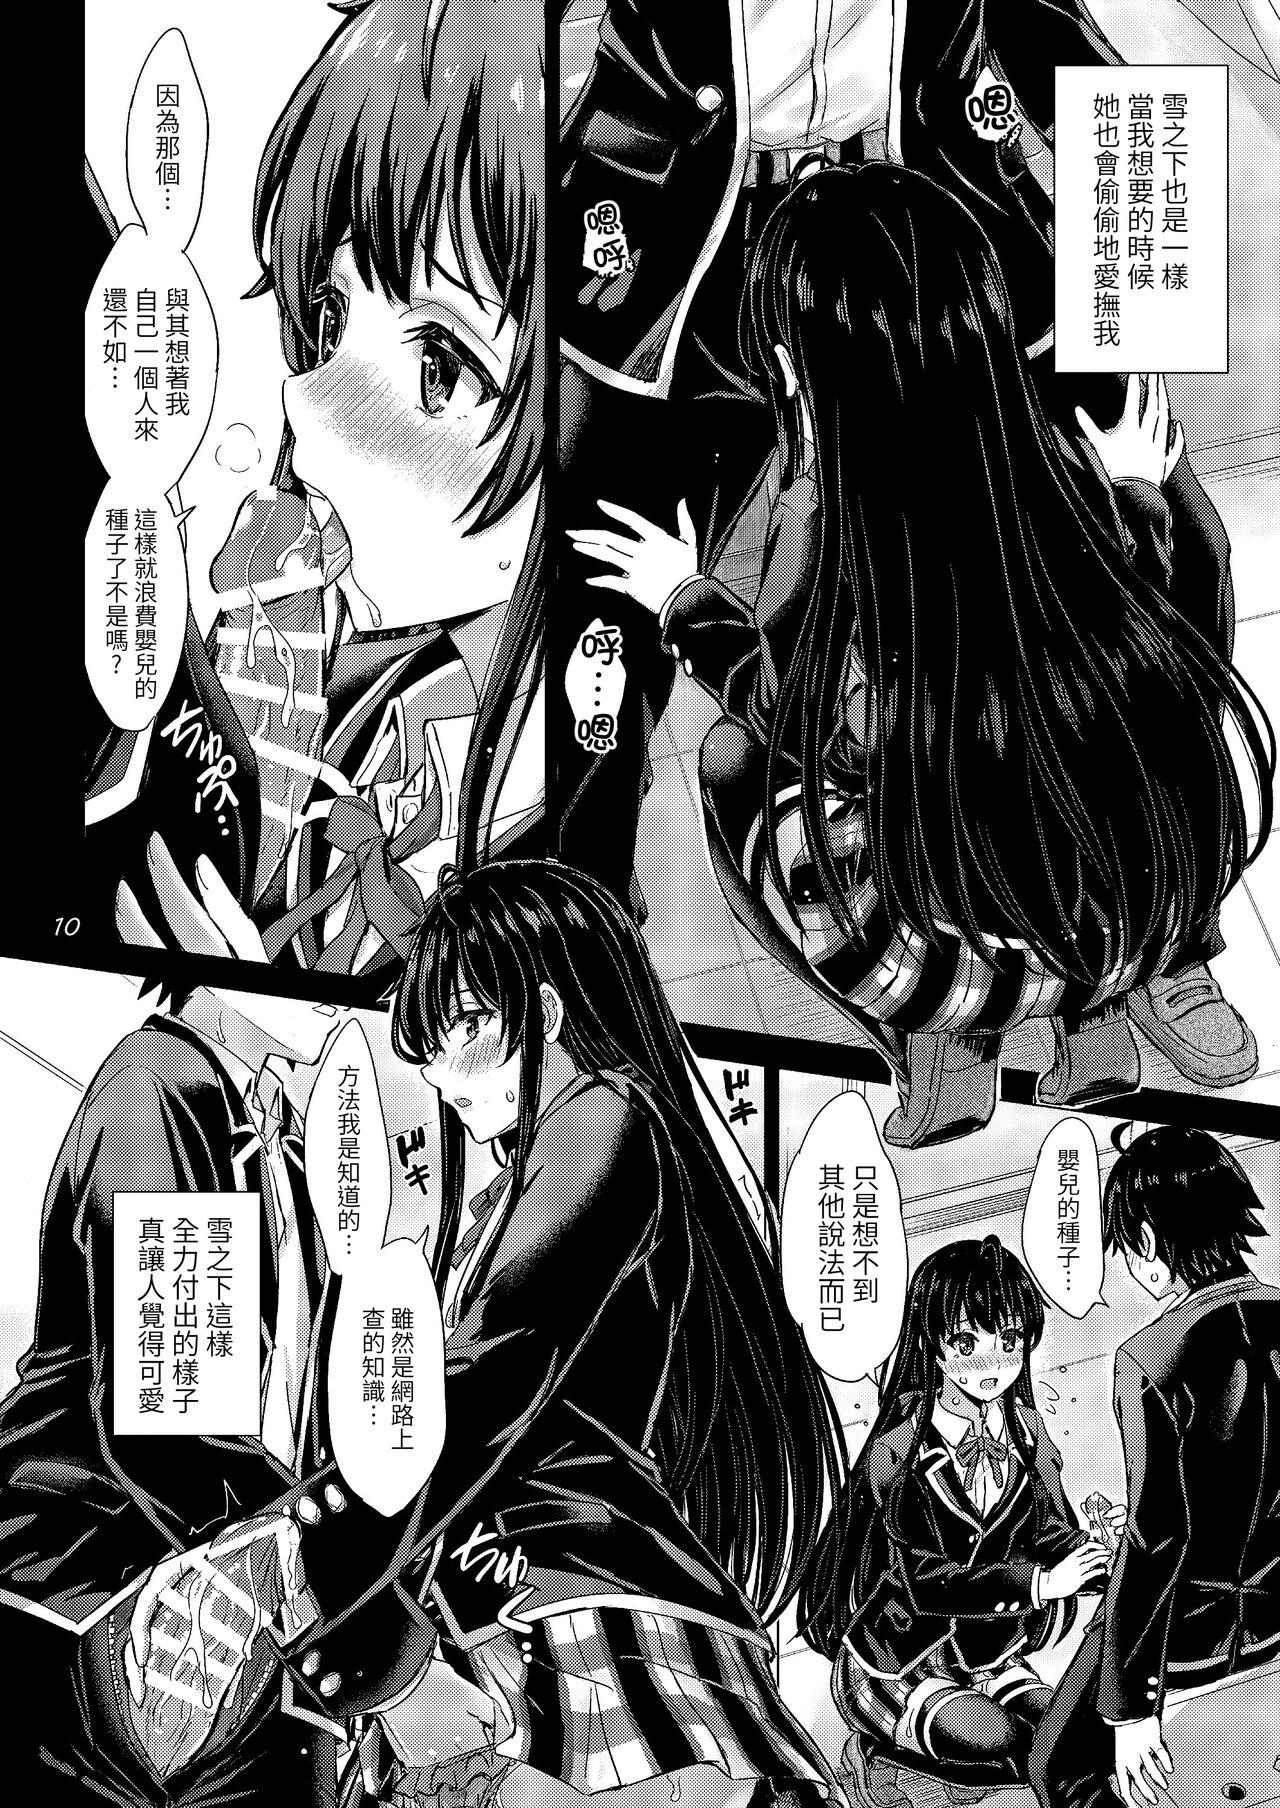 Yukinoshita Shimai to Iyarashii Futari no Himegoto. - The Yukinoshita sisters each have sex with hachiman. 9